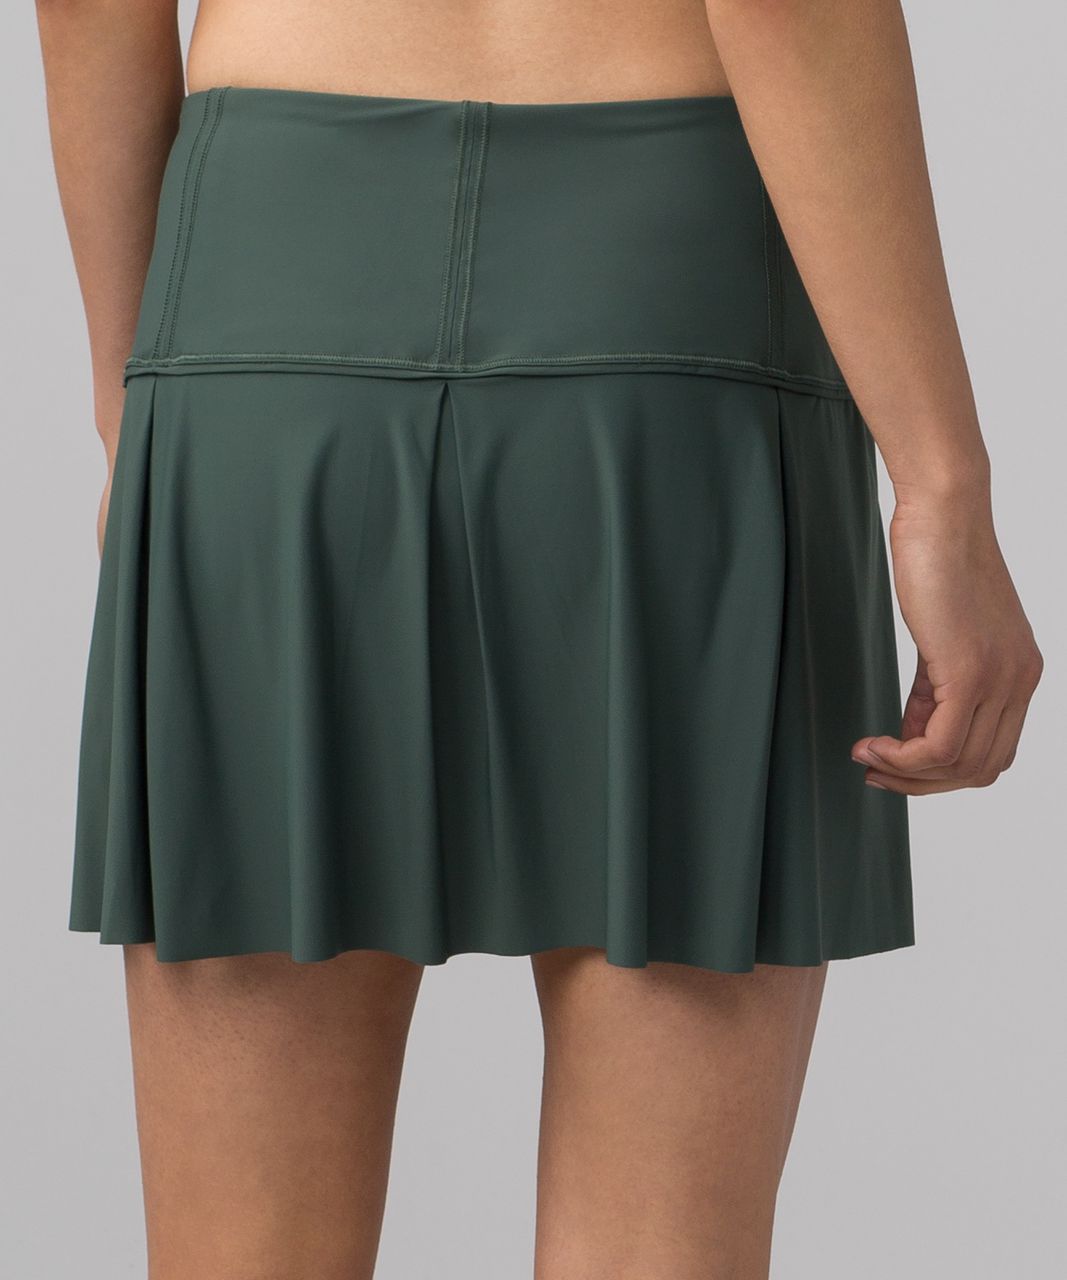 lululemon green skirt